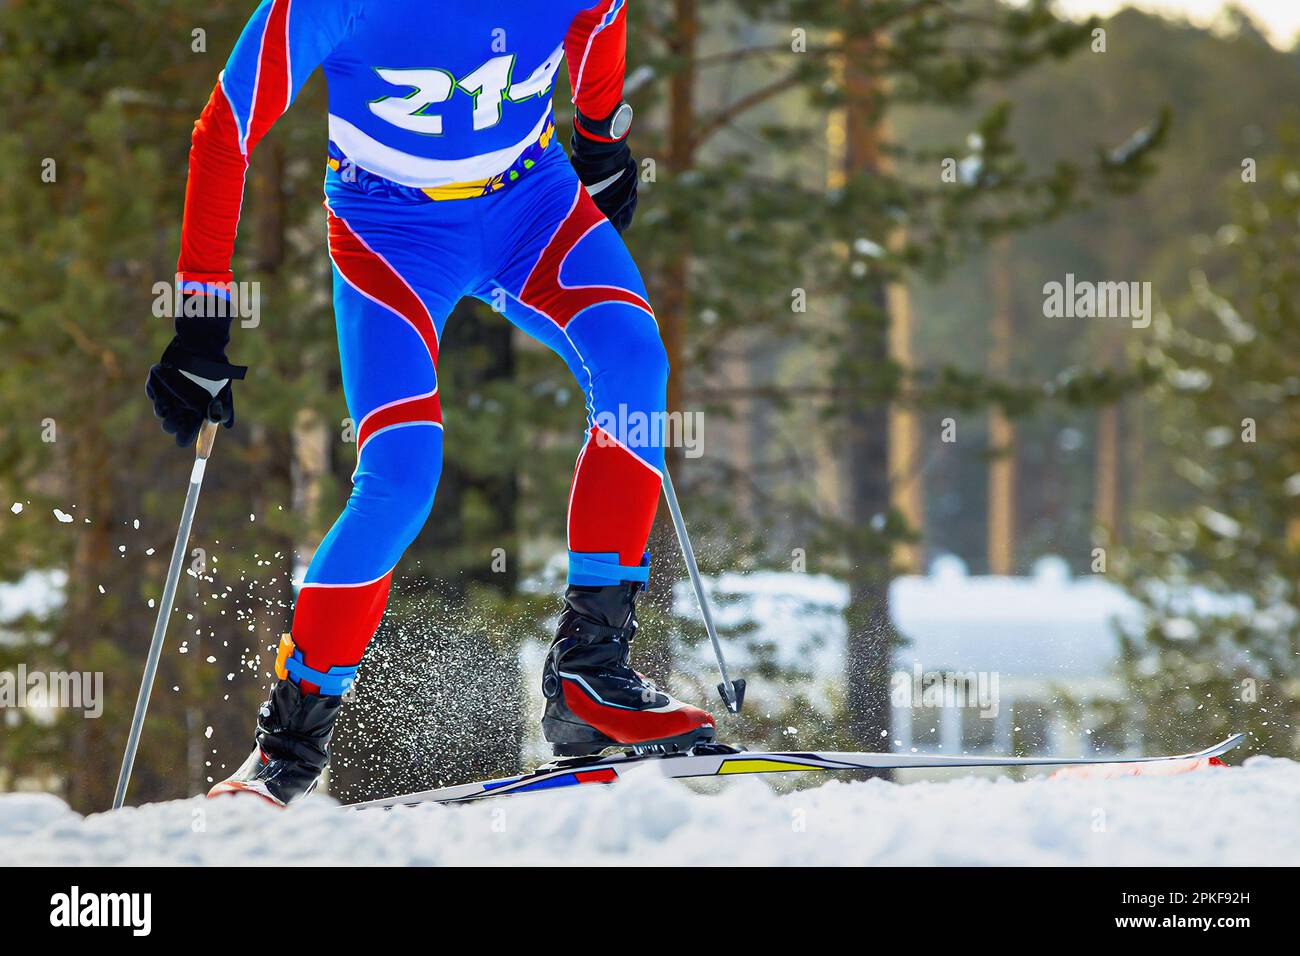 athlète masculin skieur course ski escalade montagne, éclaboussures de neige sous les skis et les bâtons, compétition de sports d'hiver Banque D'Images